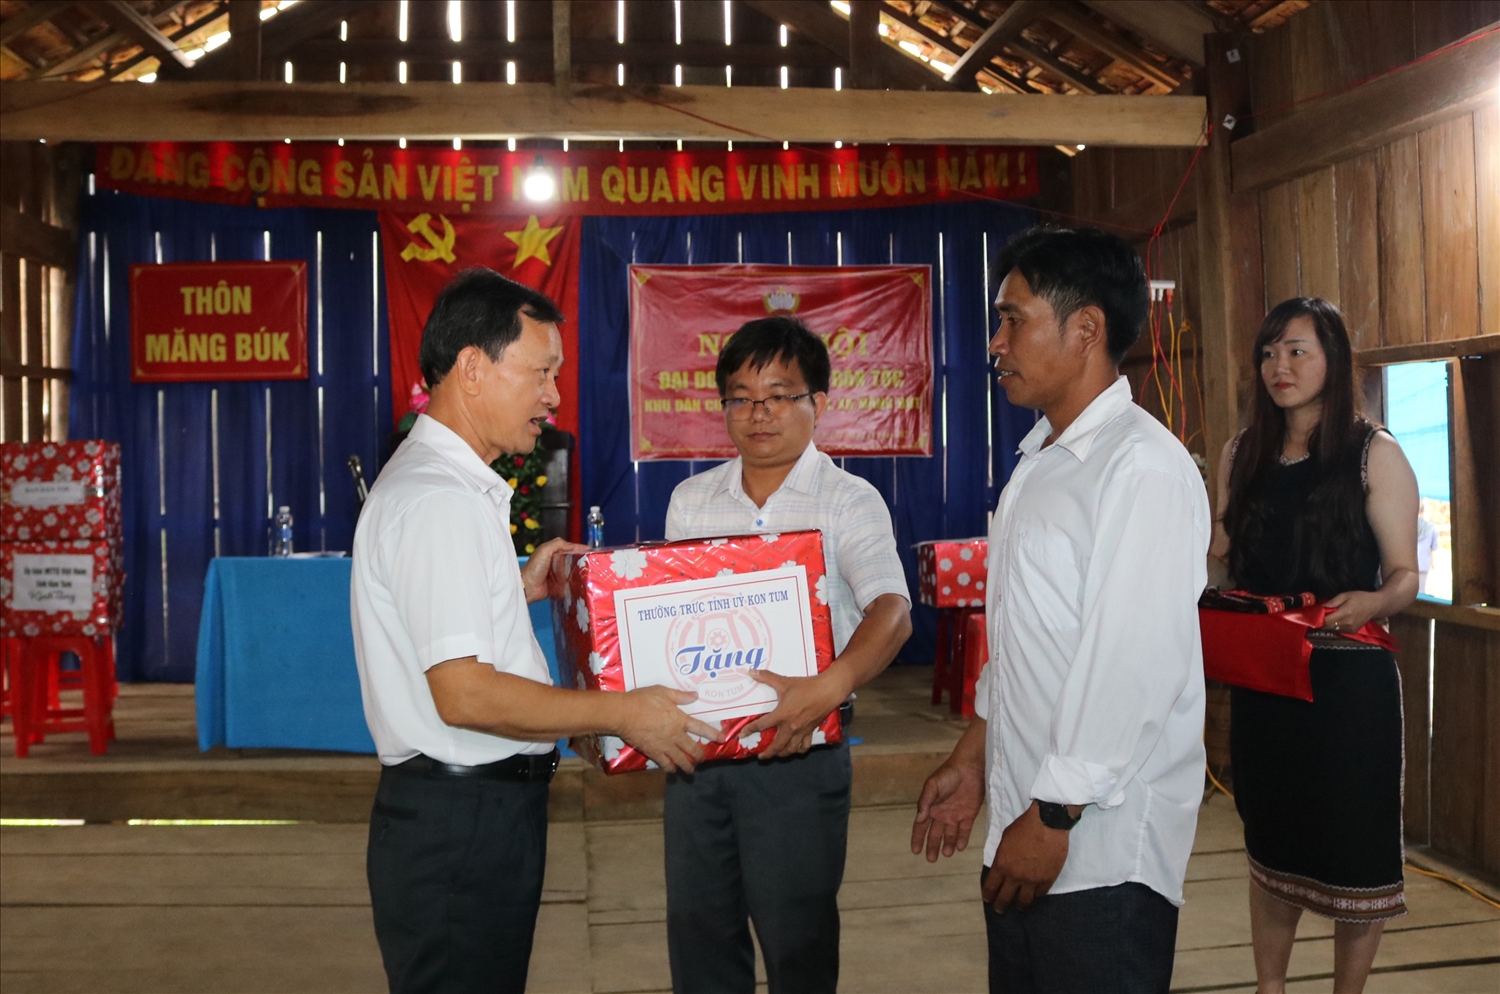 Bí thư Tỉnh ủy Kon Tum tặng quà bà con thôn Măng Búk